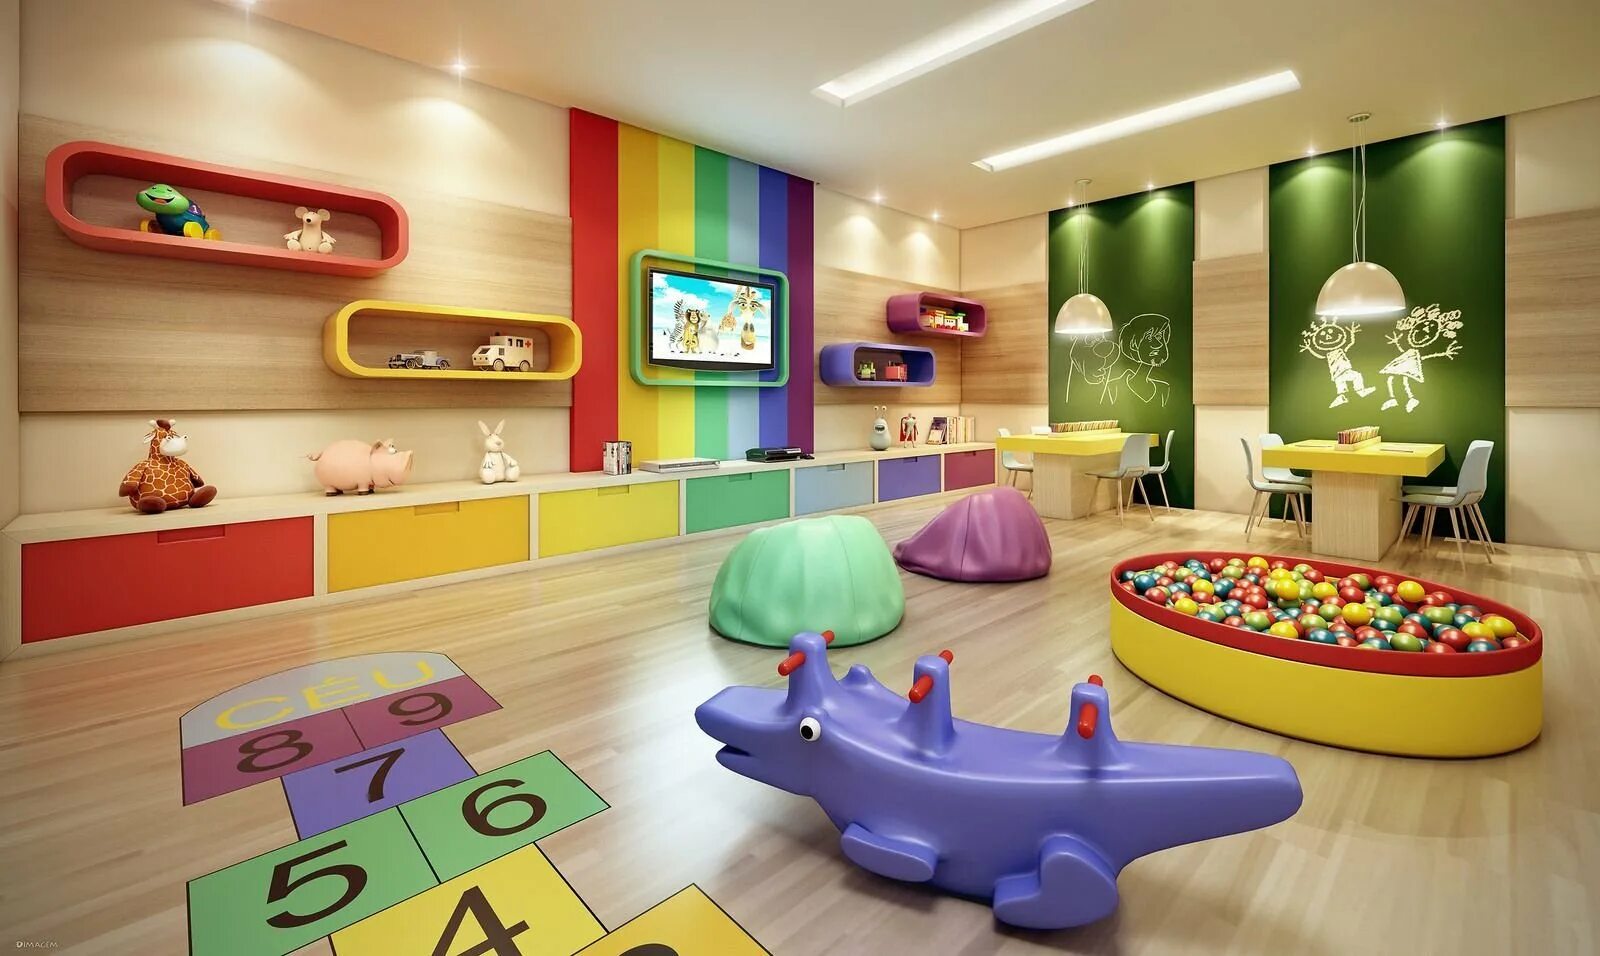 Игровая зона дома. Игровая комната. Детская игровая комната. Развлекательная комната для детей. Интерьер игровой комнаты.